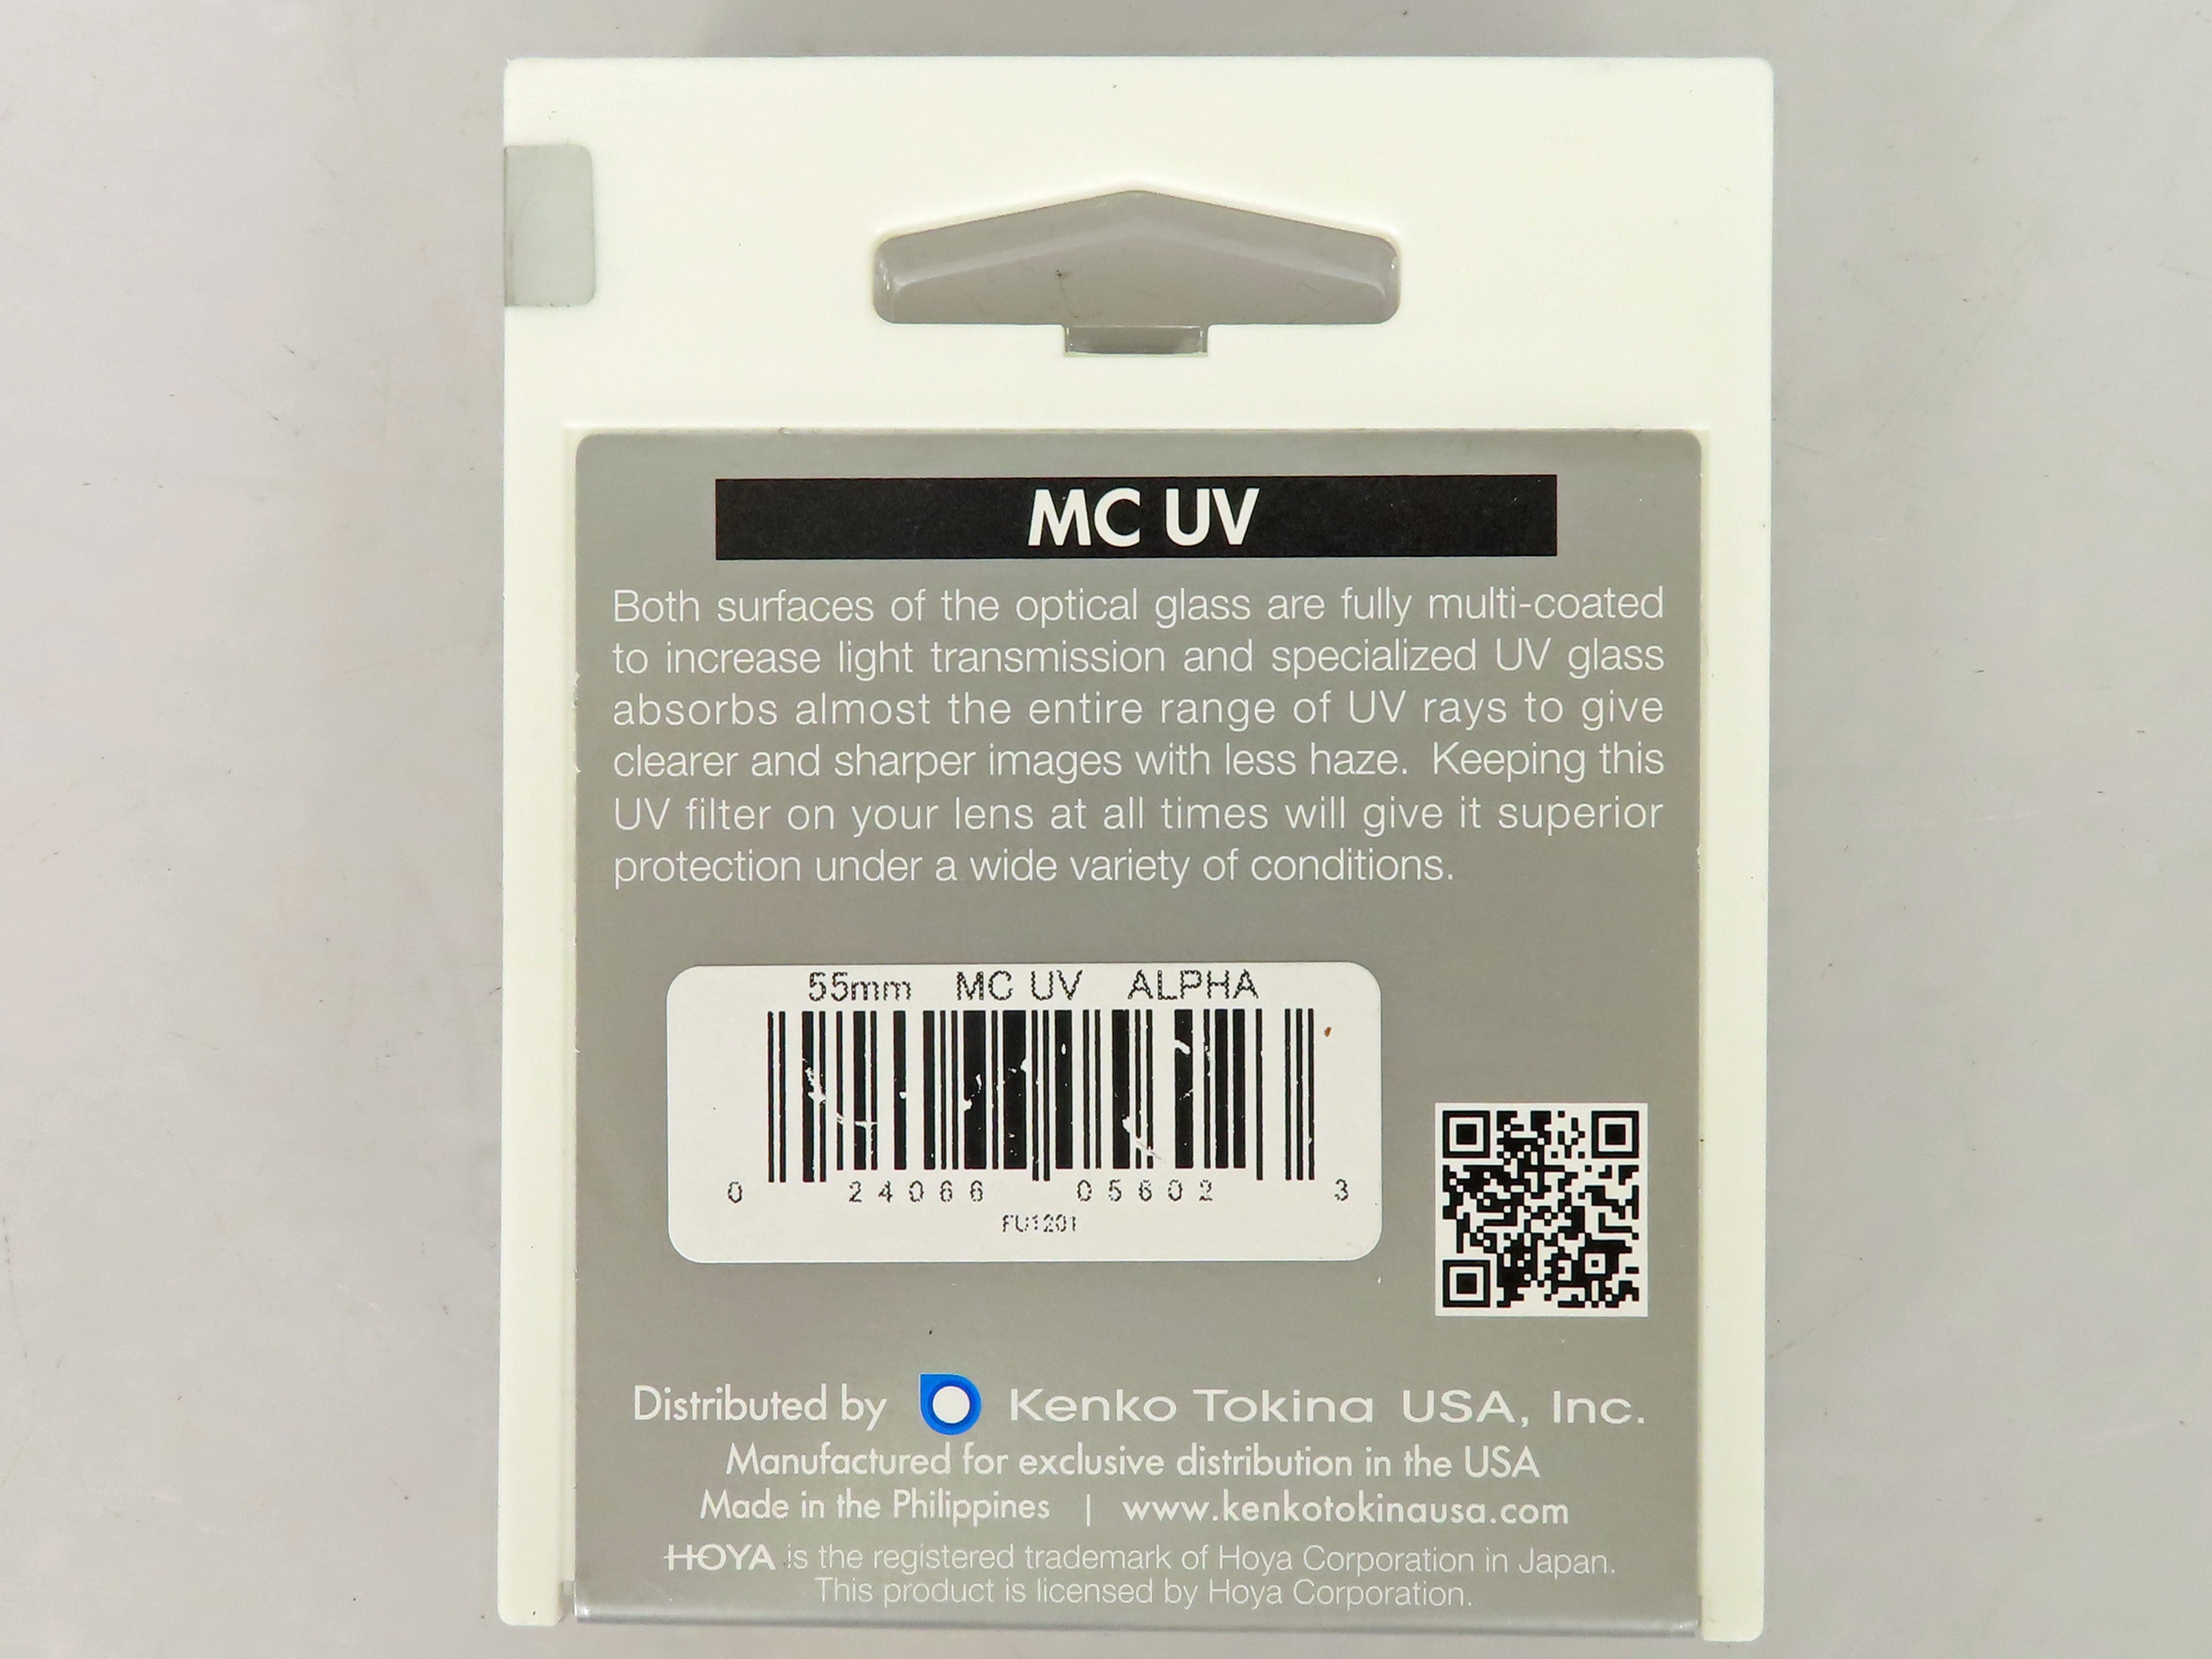 Hoya 55mm MC UV Alpha Filters